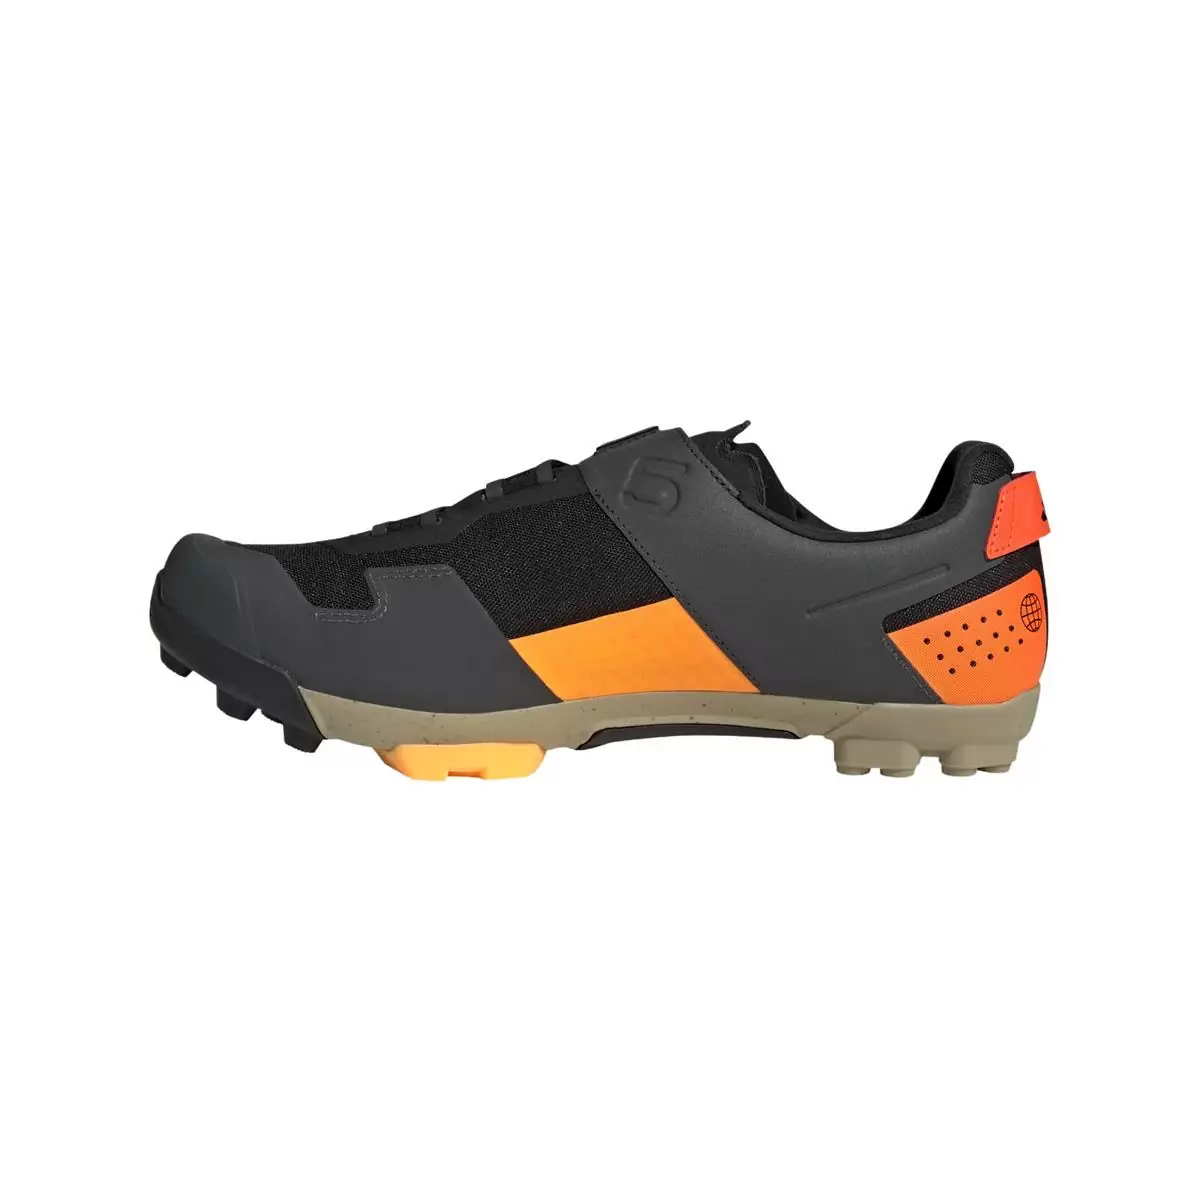 Clip 5.10 Kestrel Boa MTB Shoes Black/Orange Size 41.5 #2